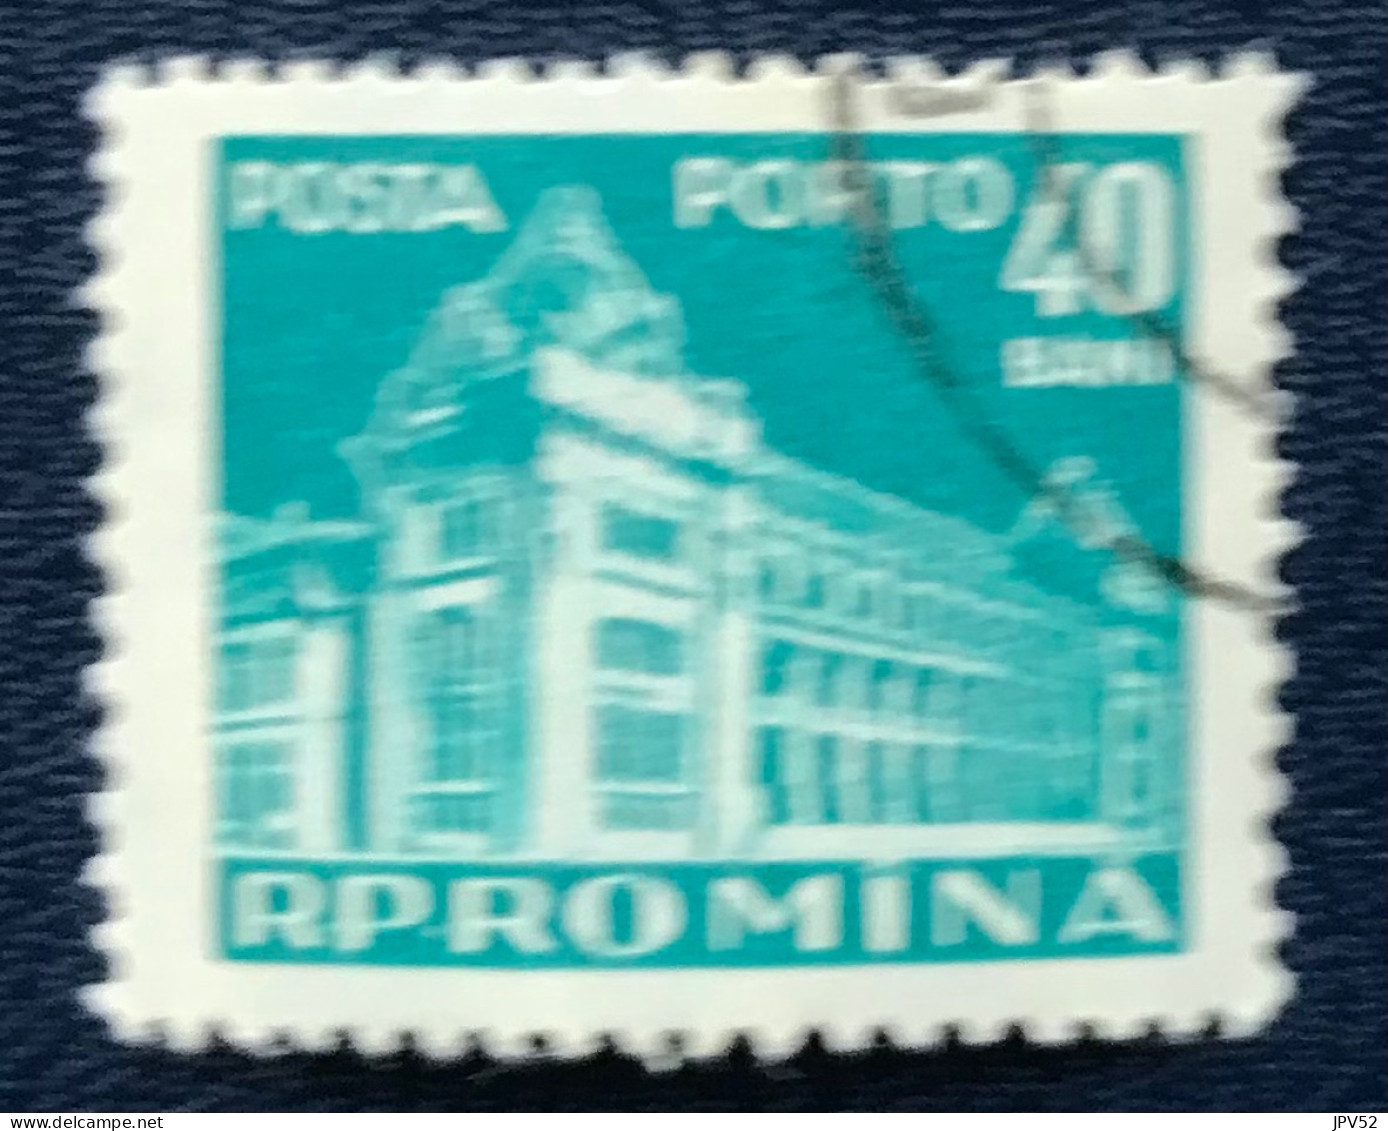 Romana - Roemenië - C14/55 - 1957 - (°)used - Michel 105 - Postkantoor - Postage Due